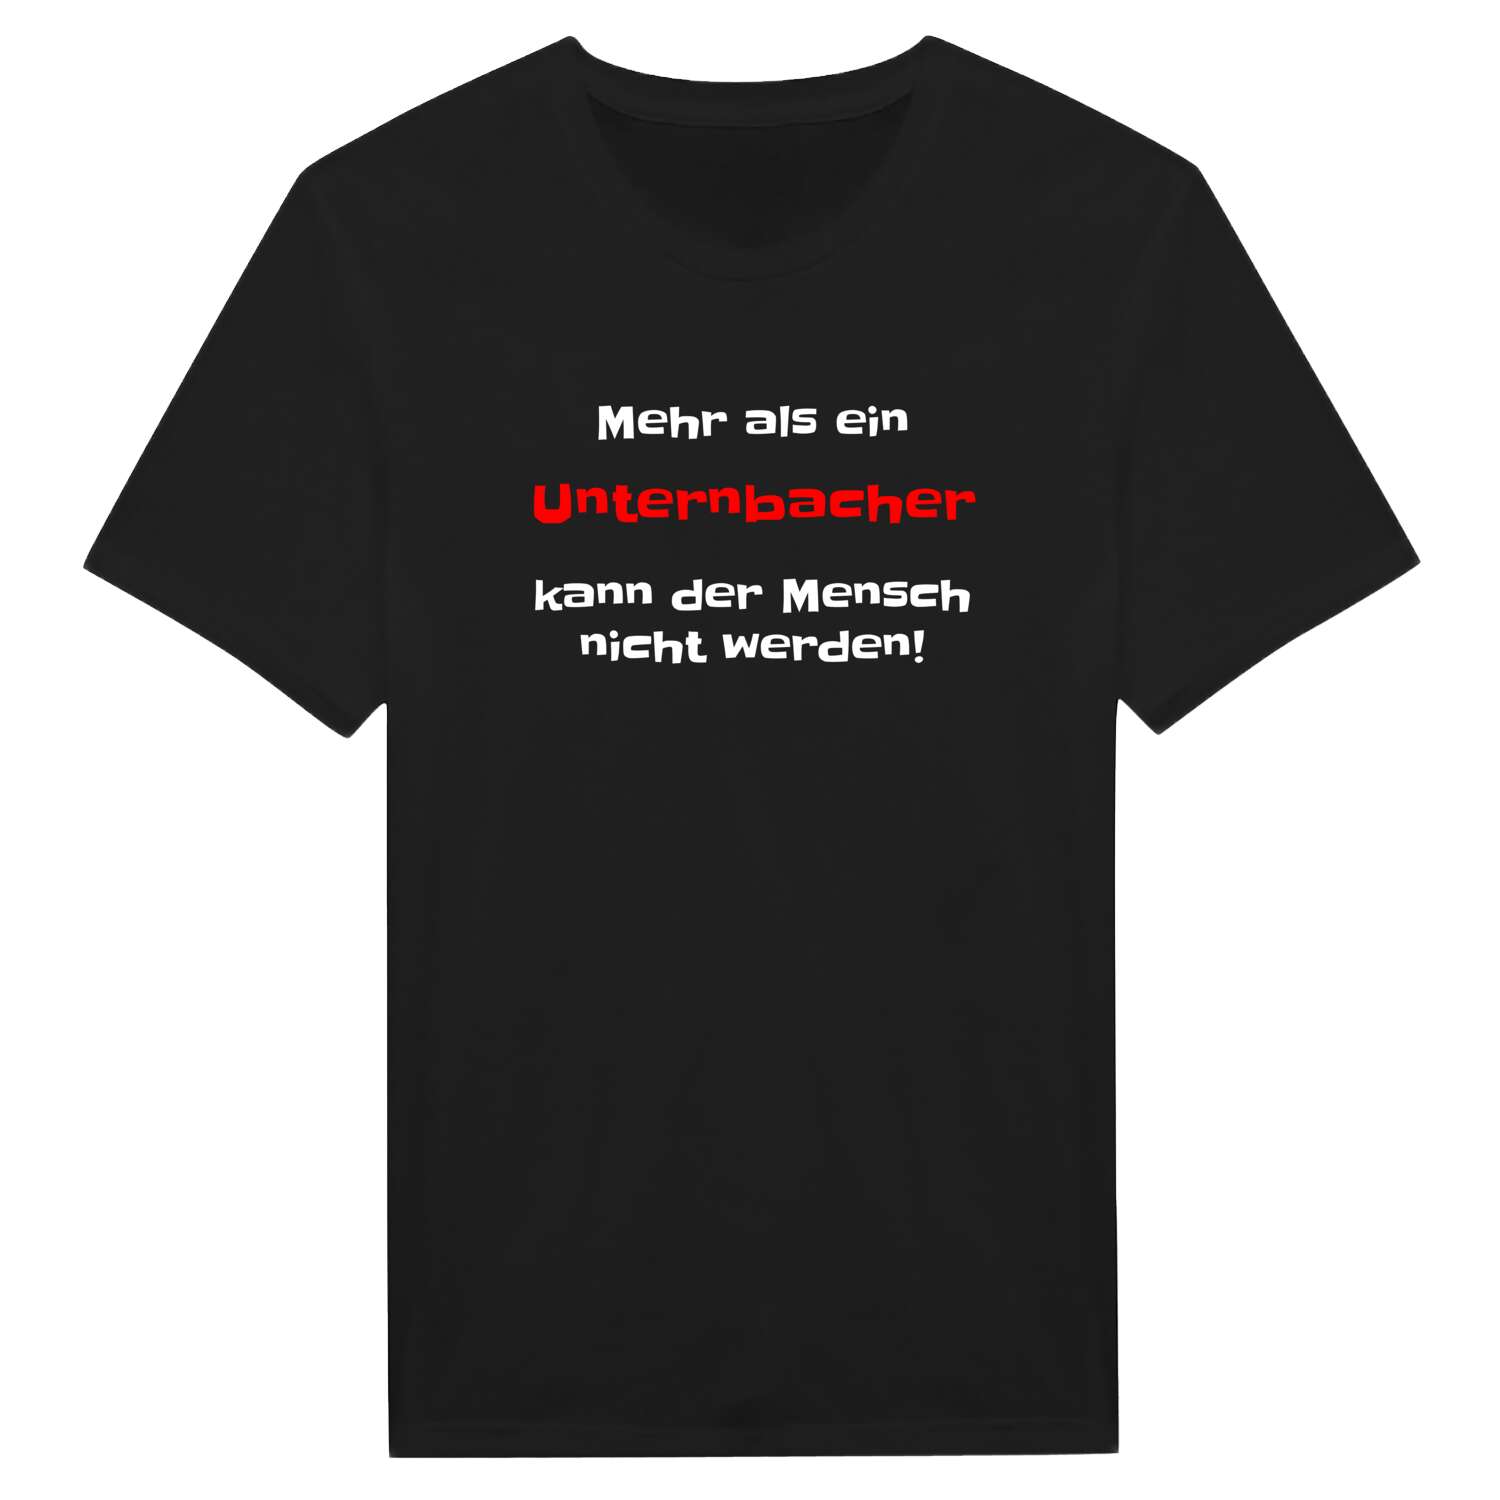 Unternbach T-Shirt »Mehr als ein«